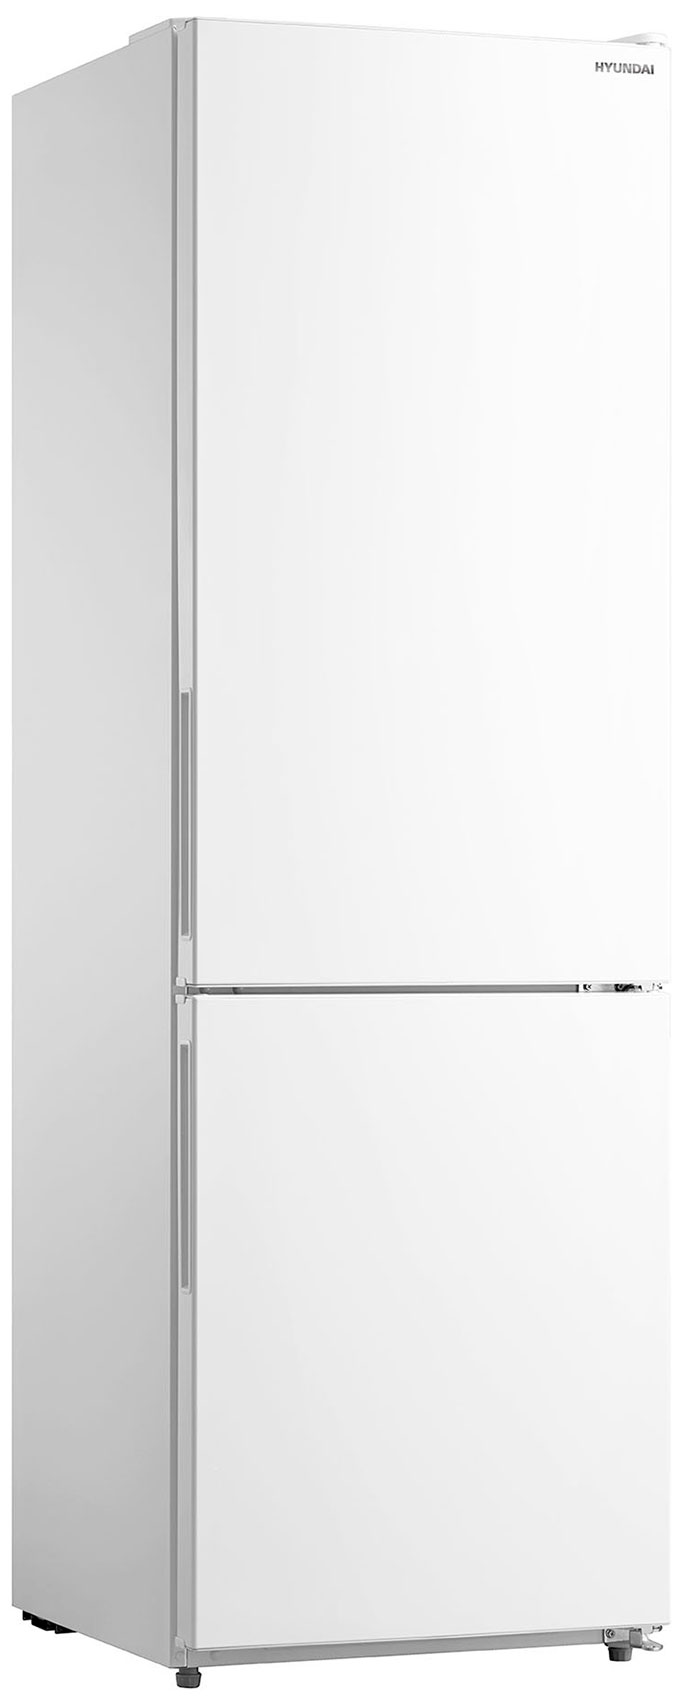 Двухкамерный холодильник Hyundai CC3093FWT белый холодильник hyundai cc2056fwt белый двухкамерный